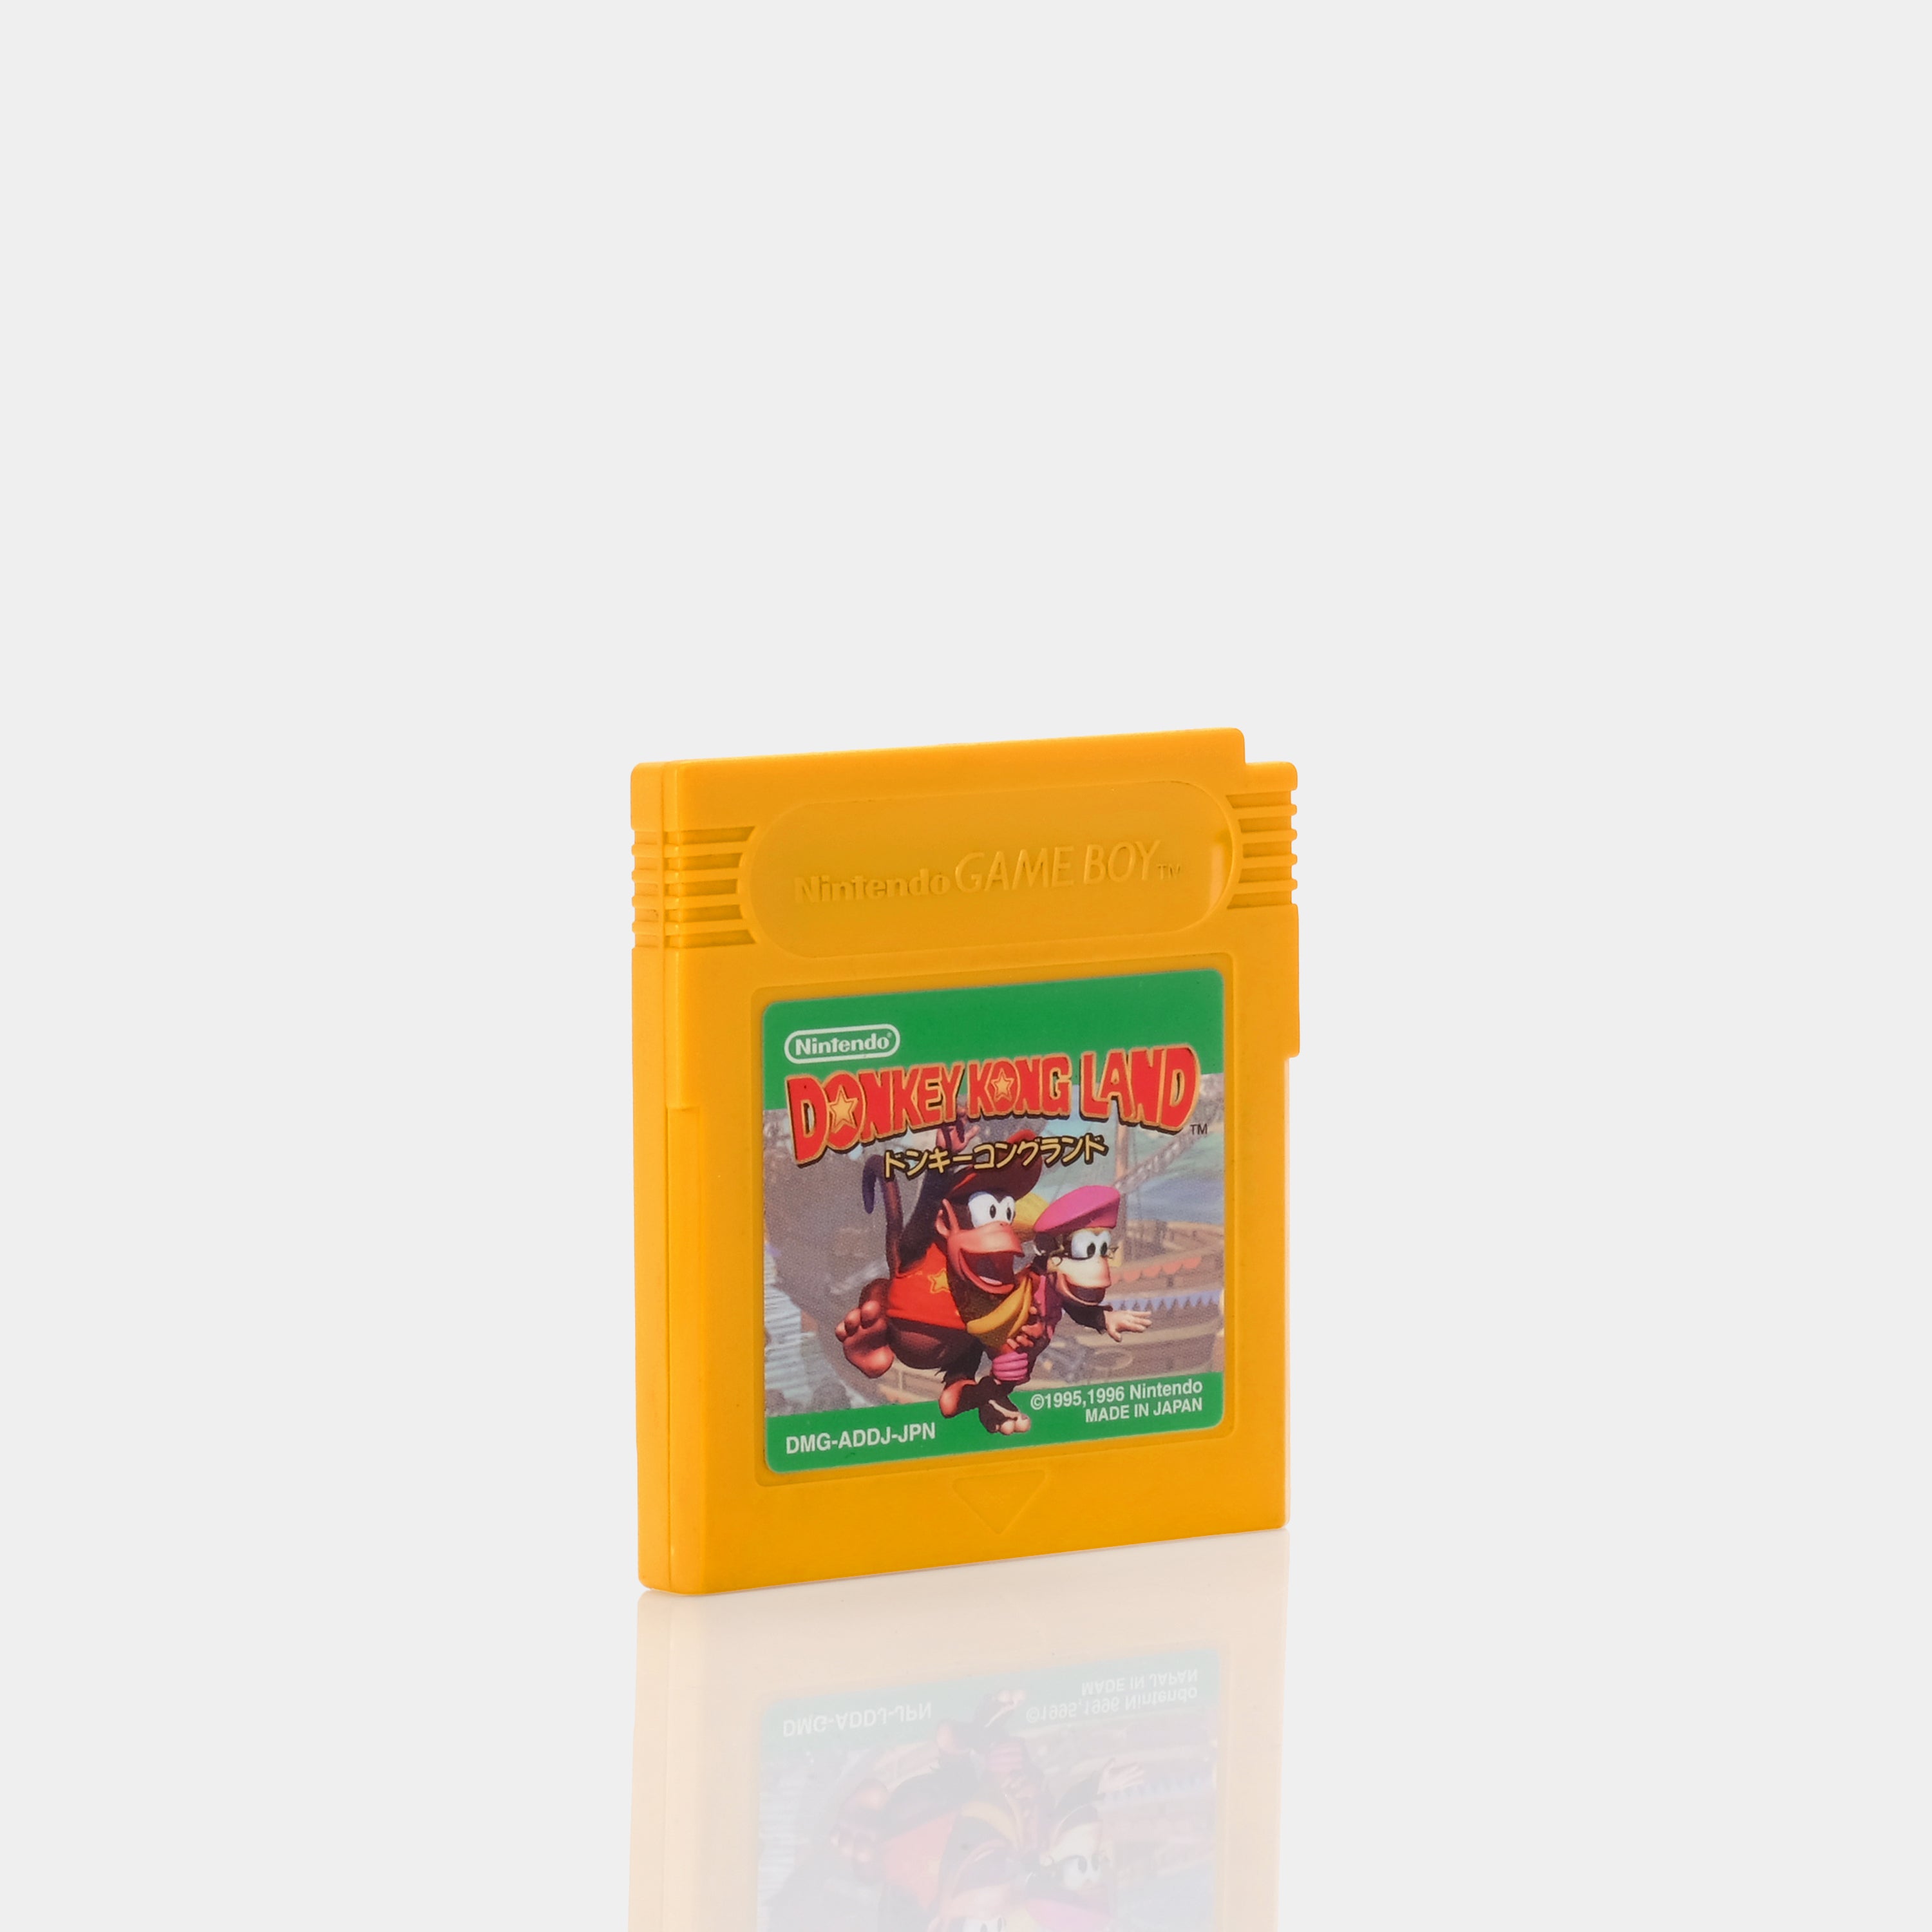 Donkey Kong Land スーパードンキーコング (Japanese Version) Game Boy Game